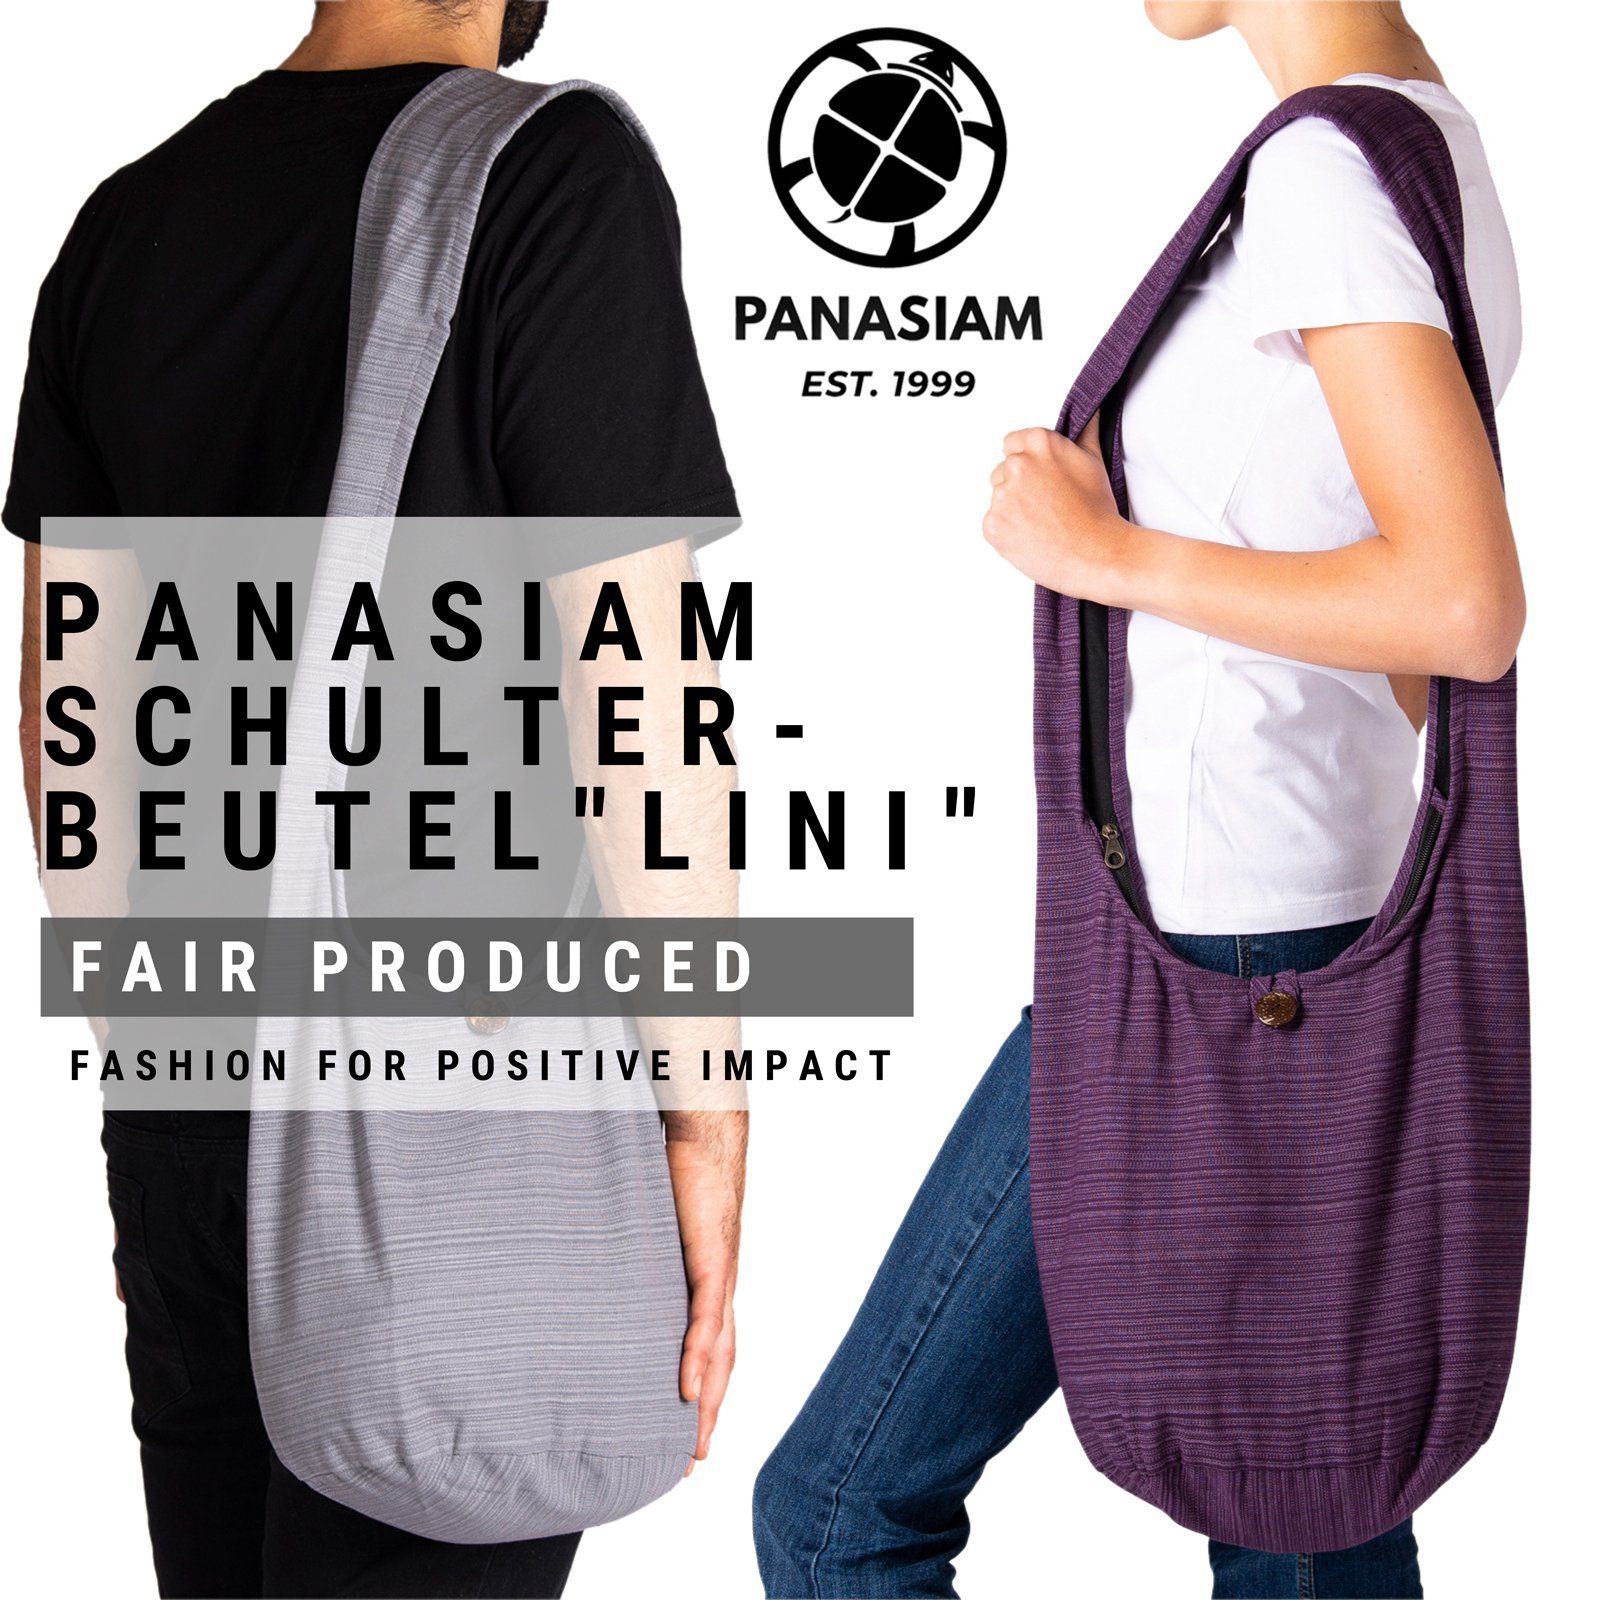 Strandtasche Wickeltasche In PANASIAM auch als 100% dunkelbraun Handtasche oder Yogatasche nutzbar Größen aus 2 Schultertasche, Lini Schulterbeutel Beuteltasche Baumwolle